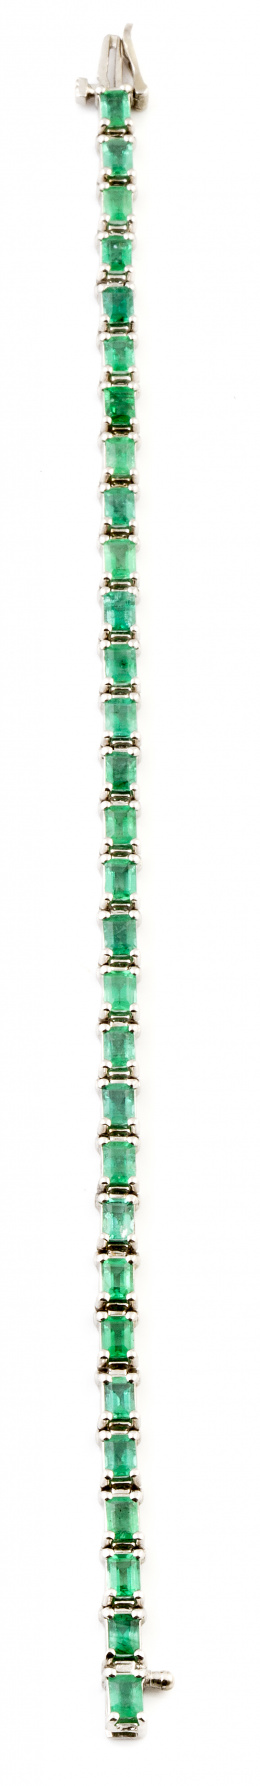 333.  Pulsera rivière de 30 esmeraldas talla esmeralda rectangular que suman 6 ct  en montura articulada de oro blanco de 18K.